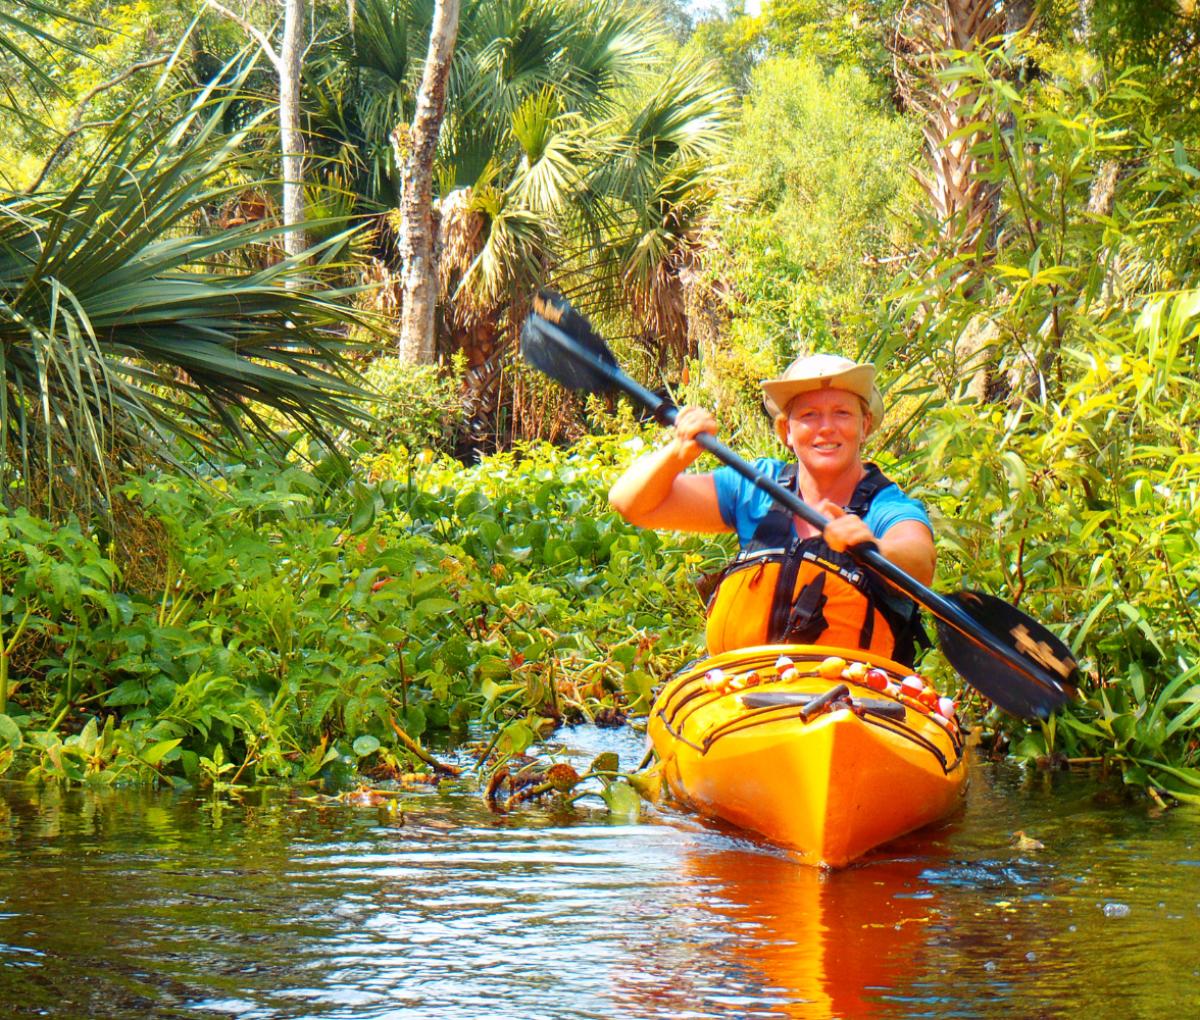 Kayaking in Wekiva River, Orlando